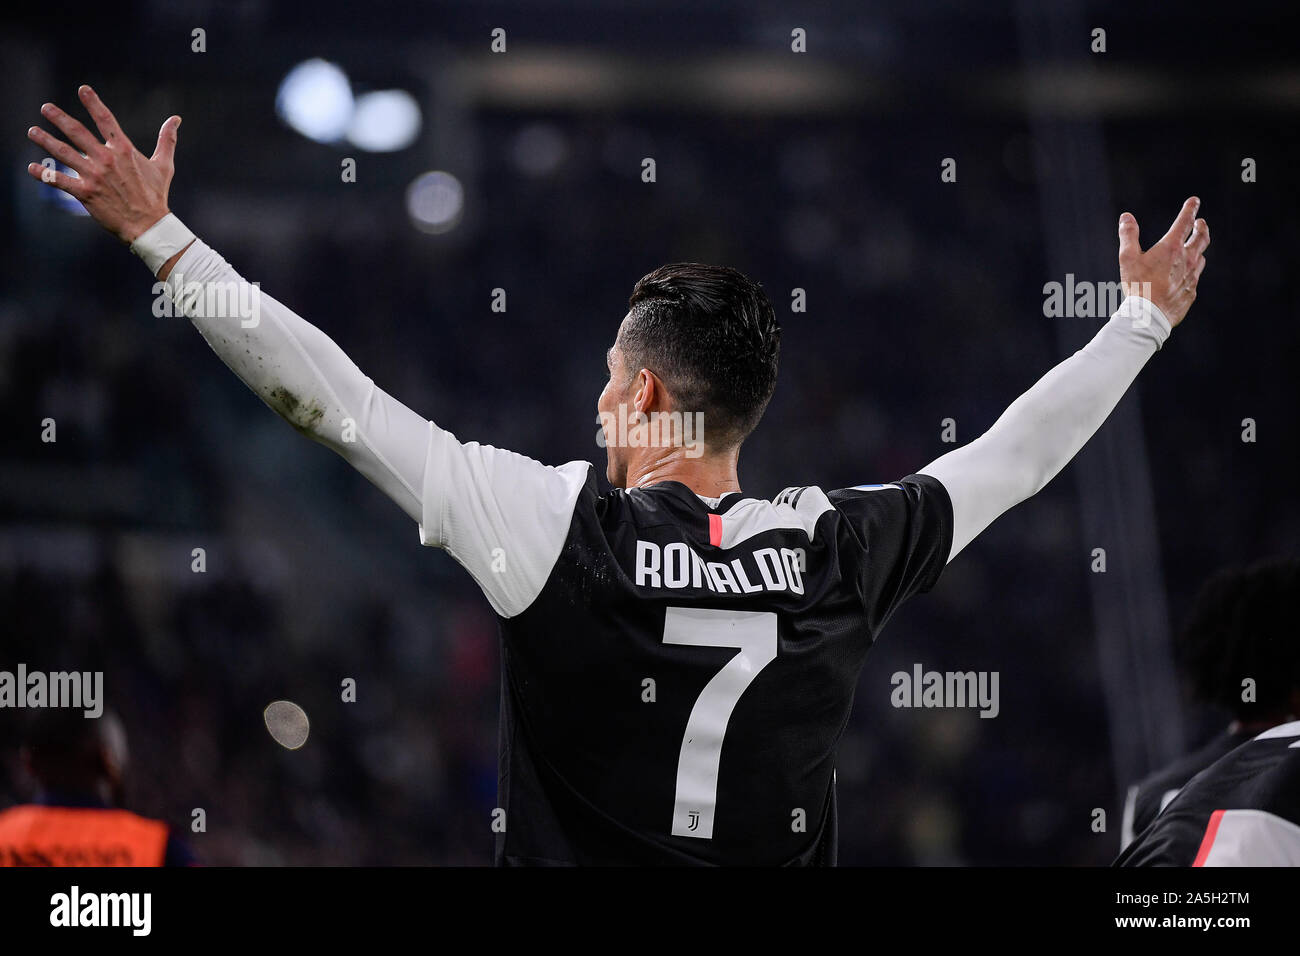 Juventus jugador Cristiano Ronaldo durante la Juventus - Bolonia, partido de fútbol en el estadio Allianz en Turín Foto de stock